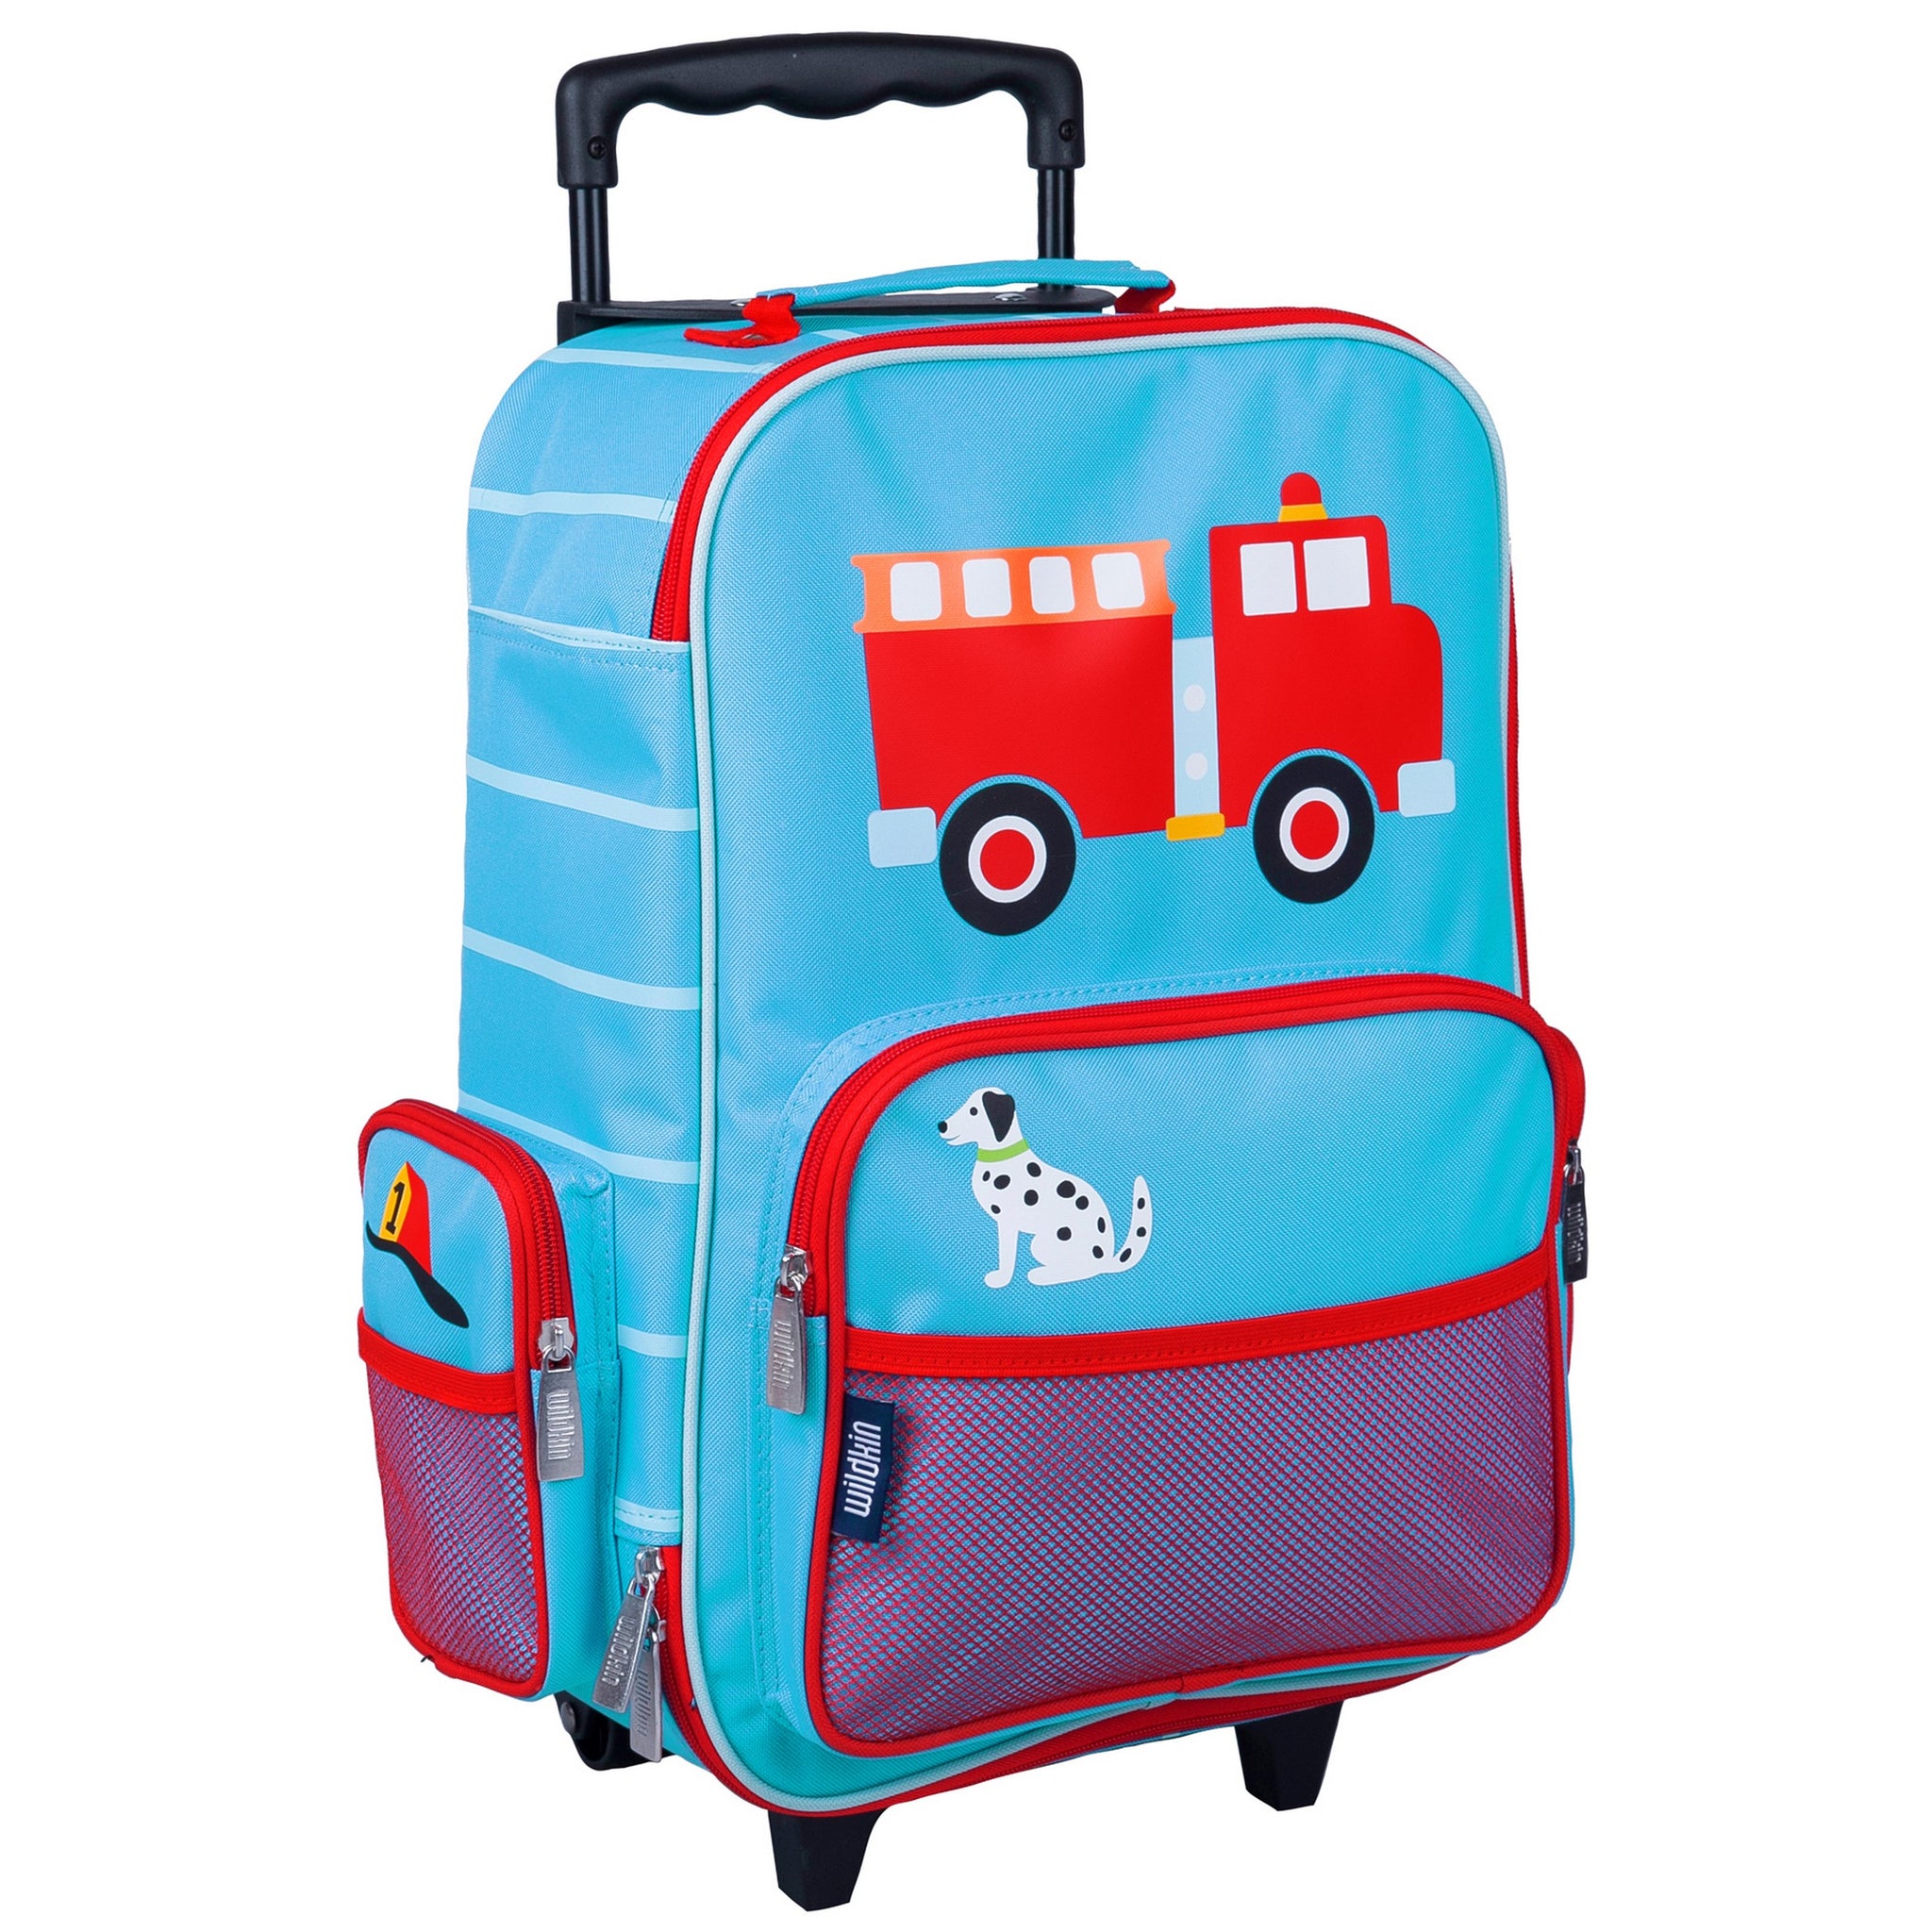 Wildkin Kids Rolling Suitcase Luggage (Heroes)